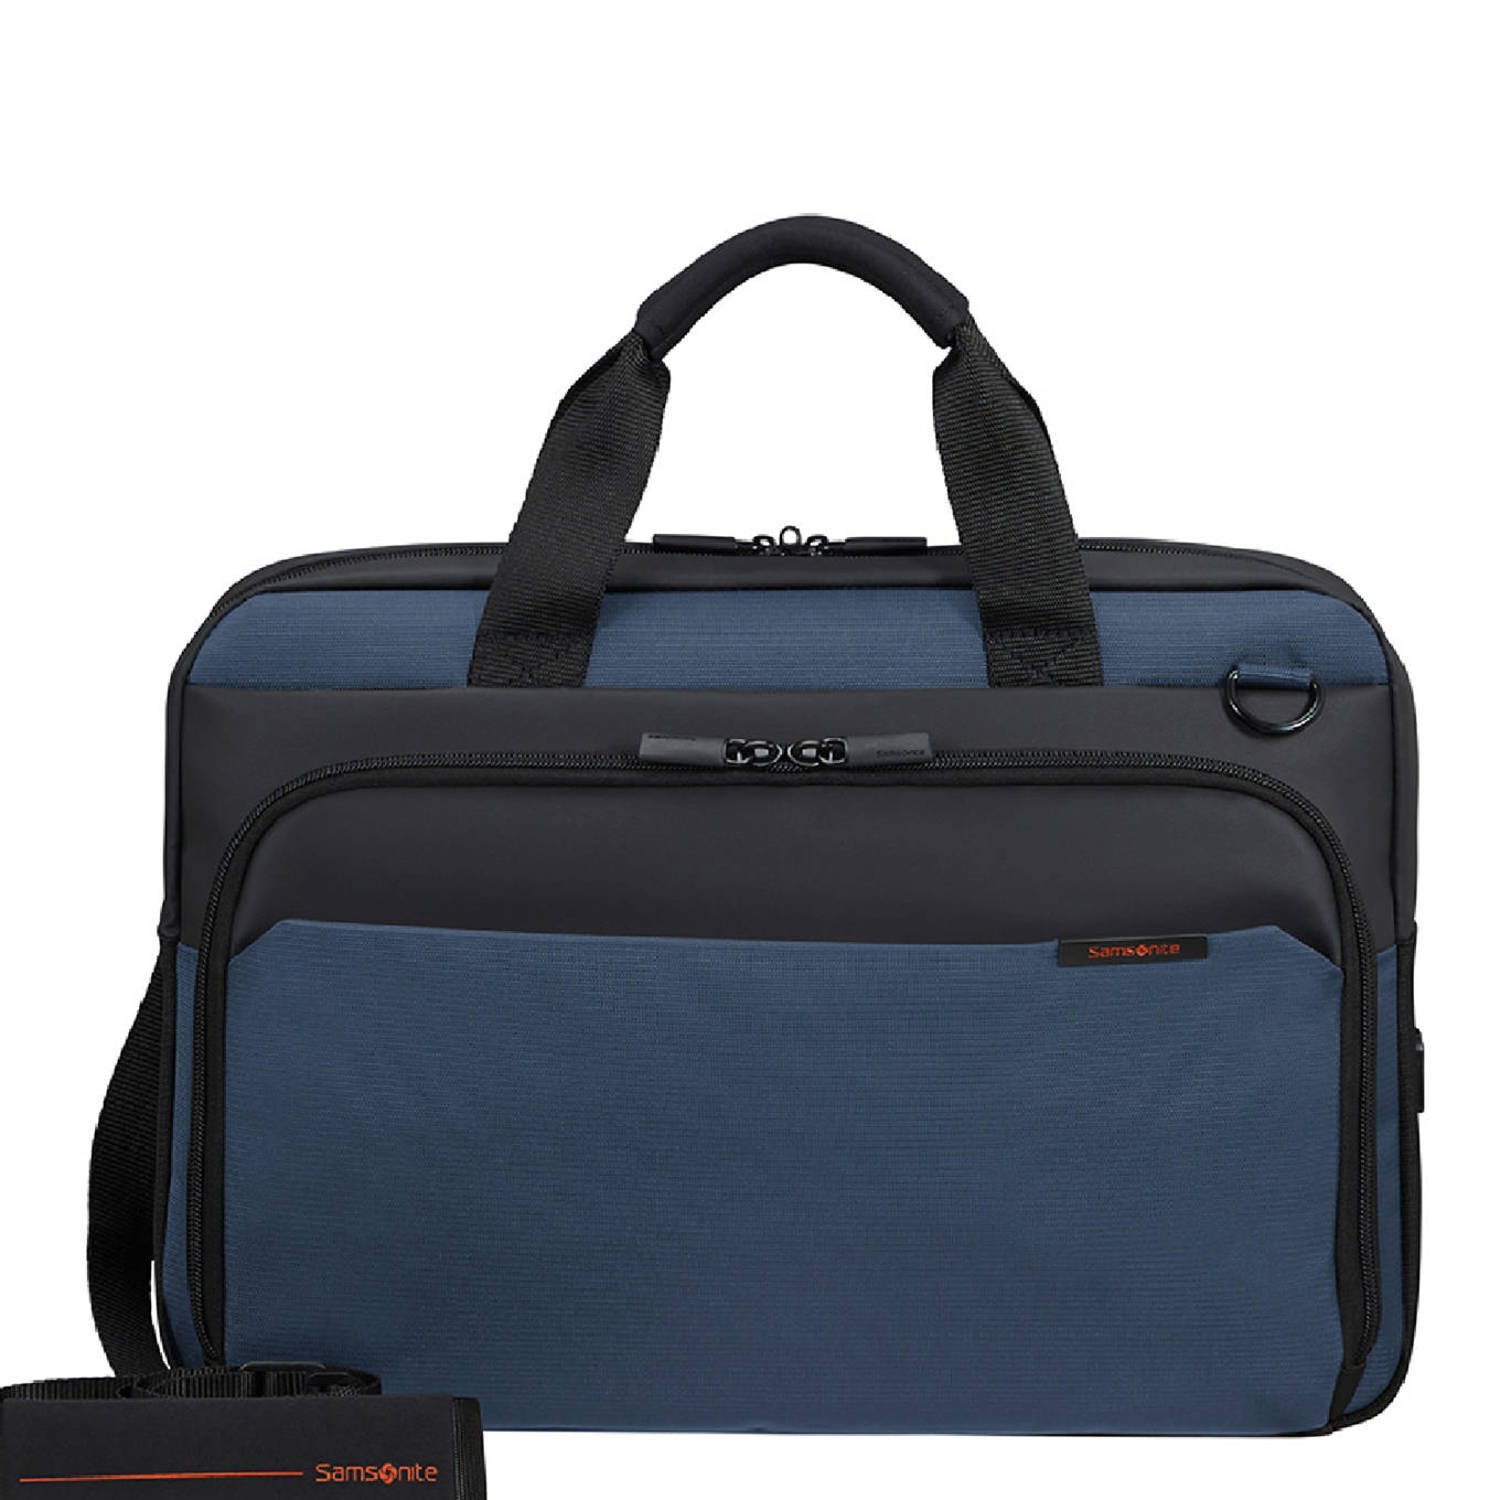 Samsonite 15.6 inch laptoptas Mysight donkerblauw